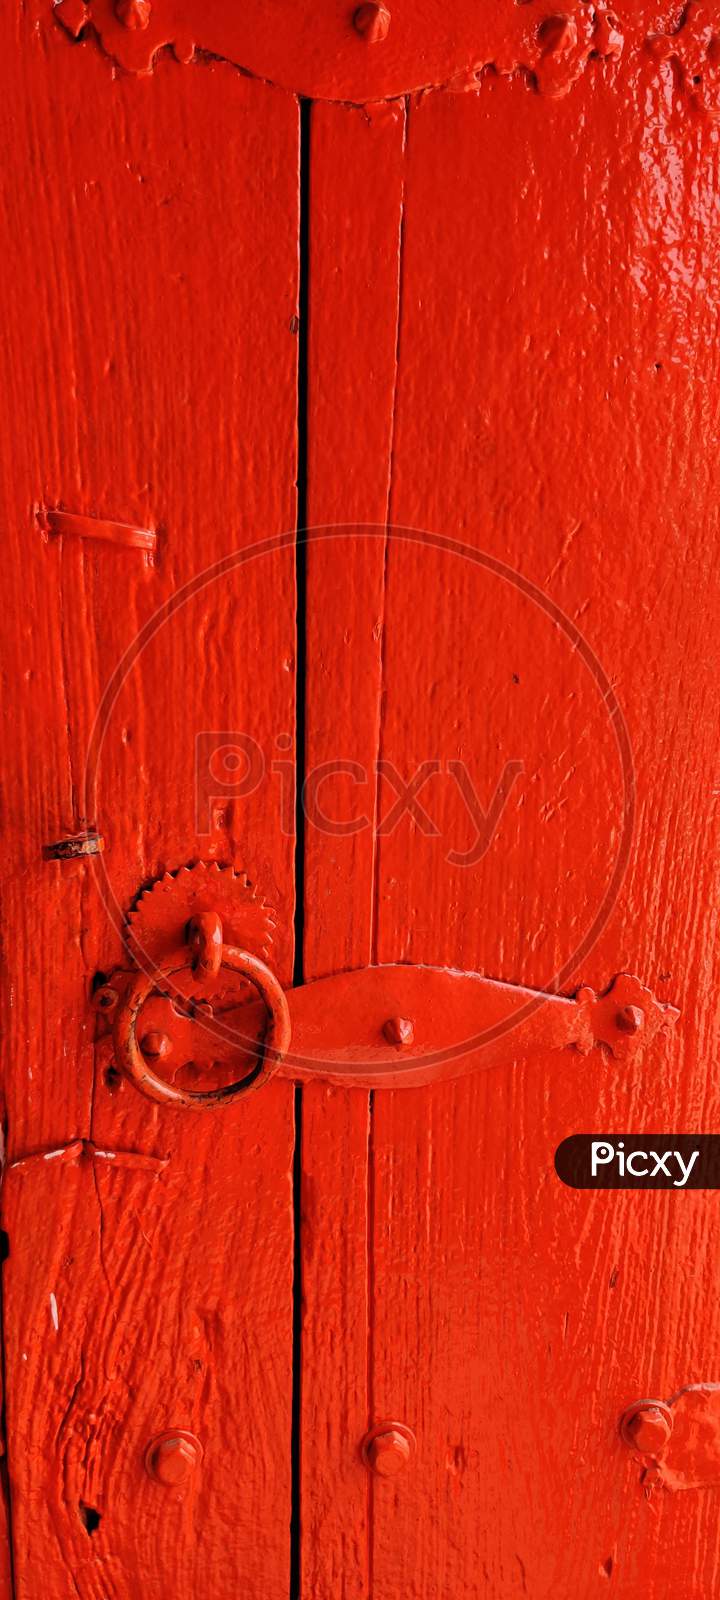 An old metal door handle knocker on a wooden door